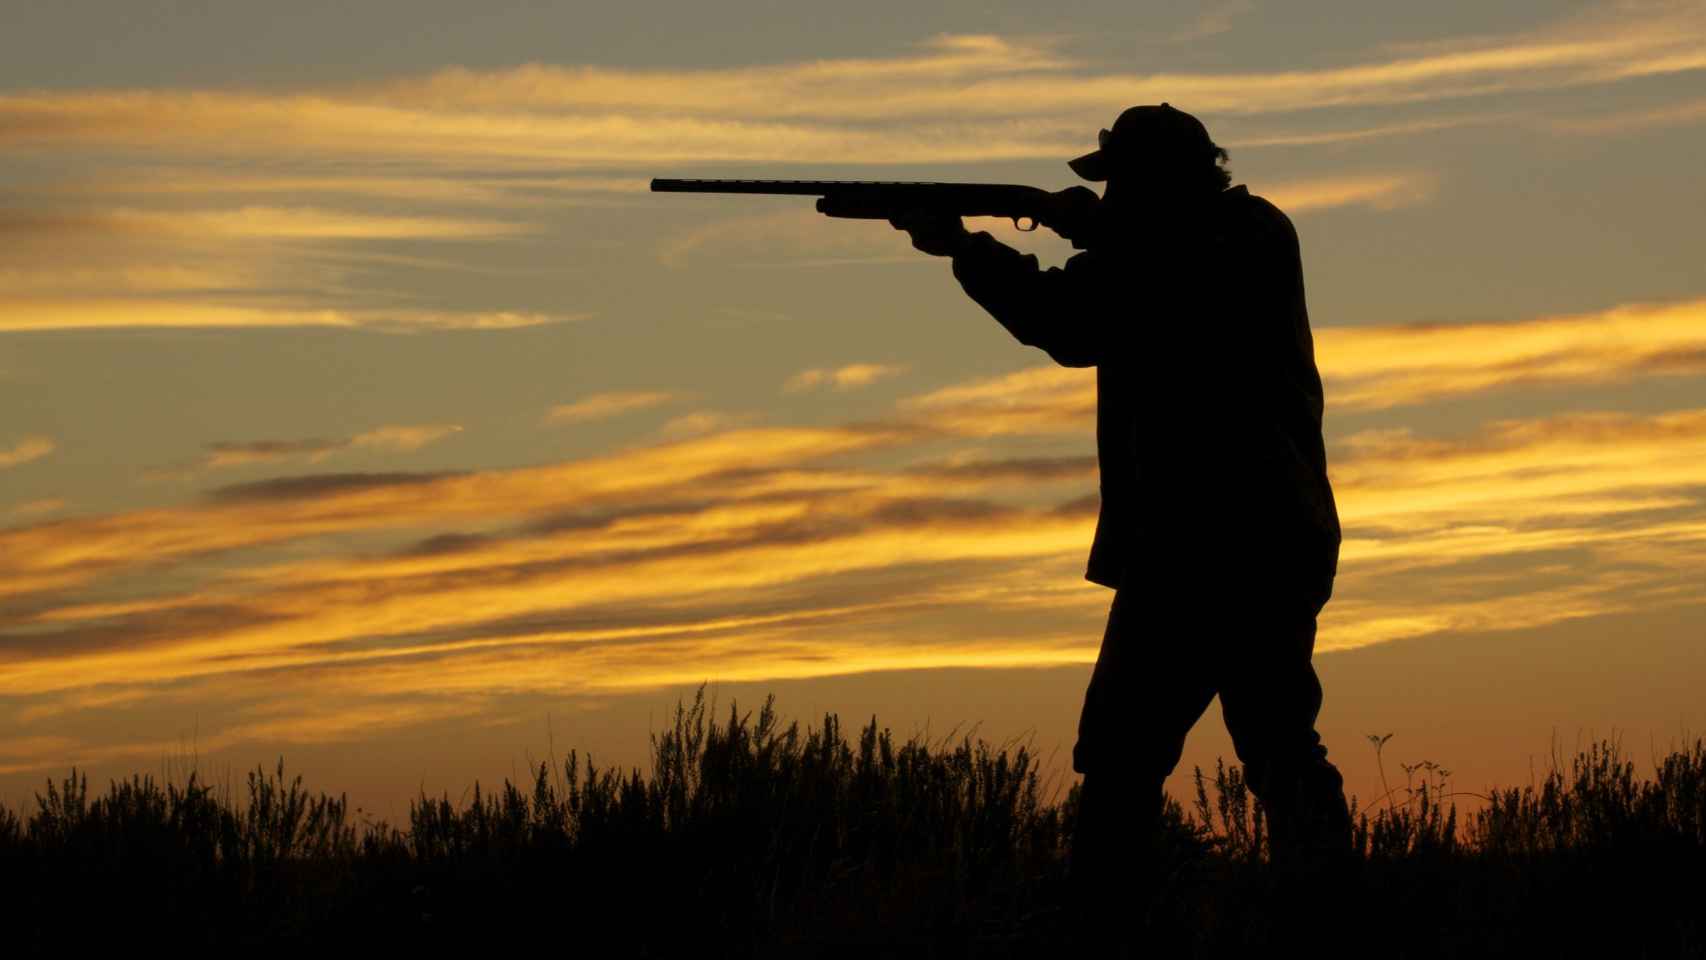 El cazador disparó sin querer a su compañero